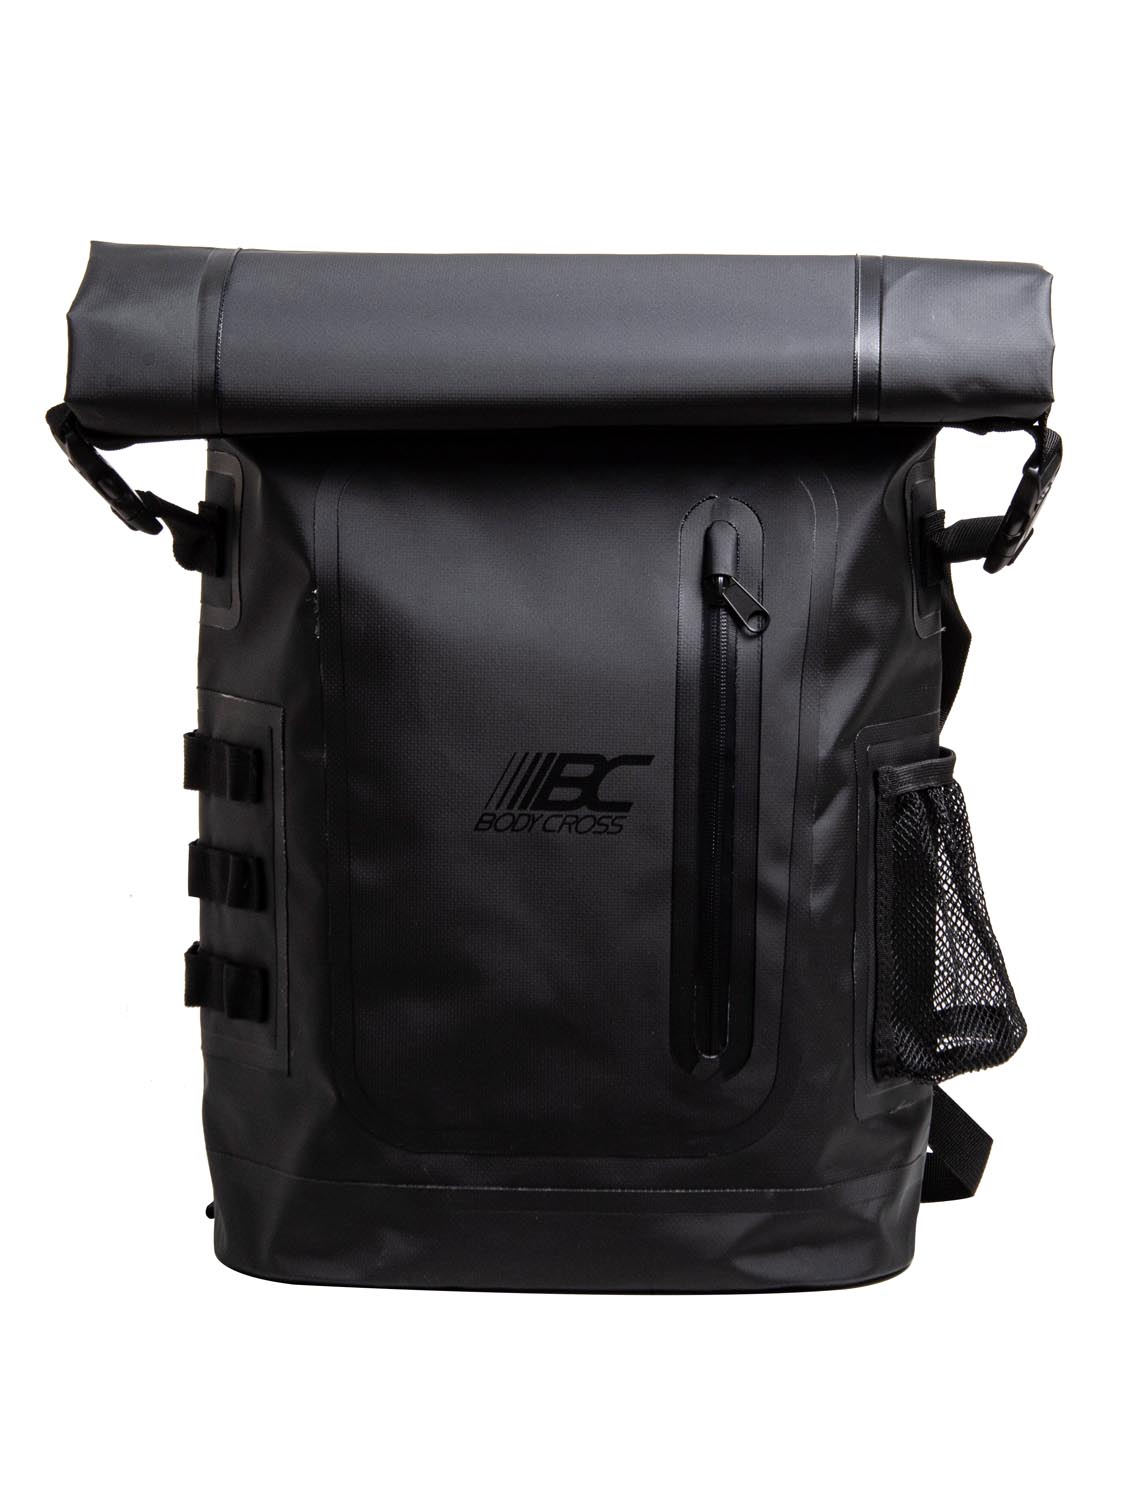 KABA Waterproof Backpack 25 litres